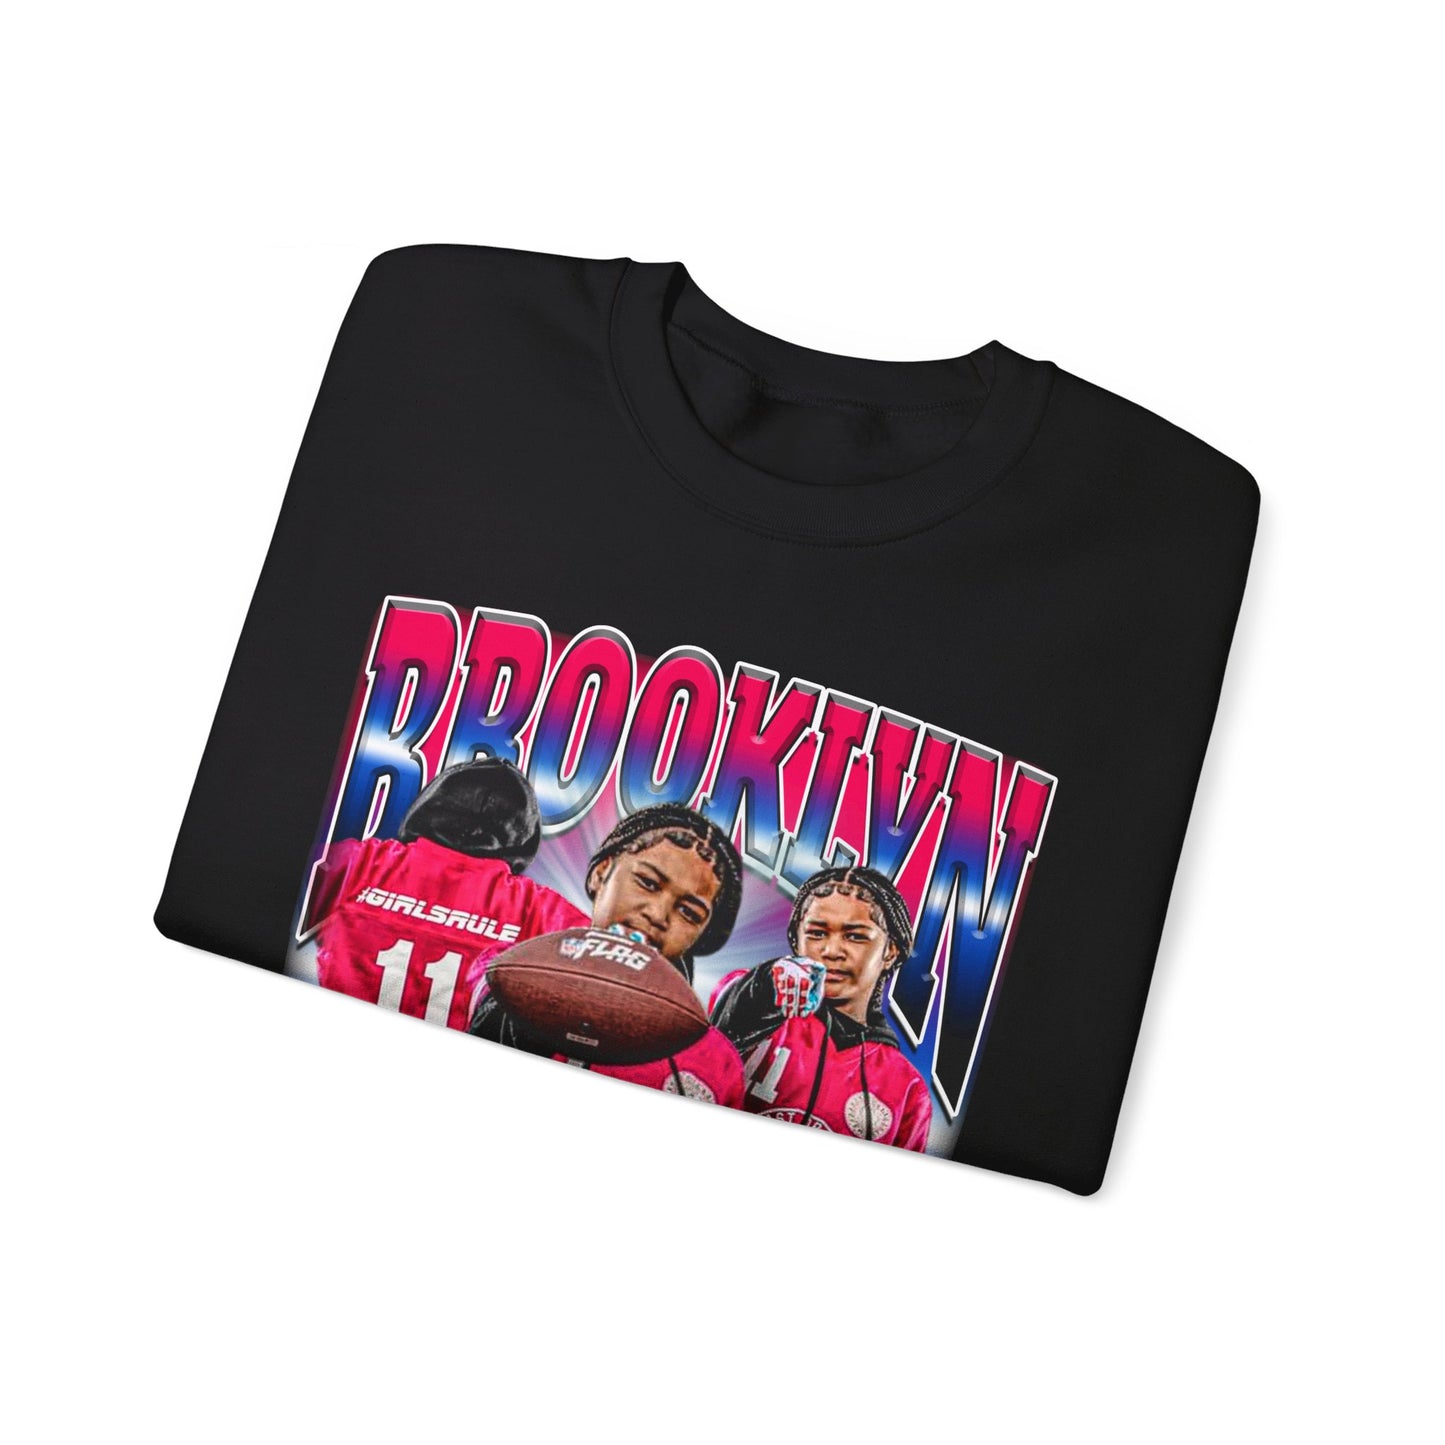 Brooklyn Crewneck Sweatshirt